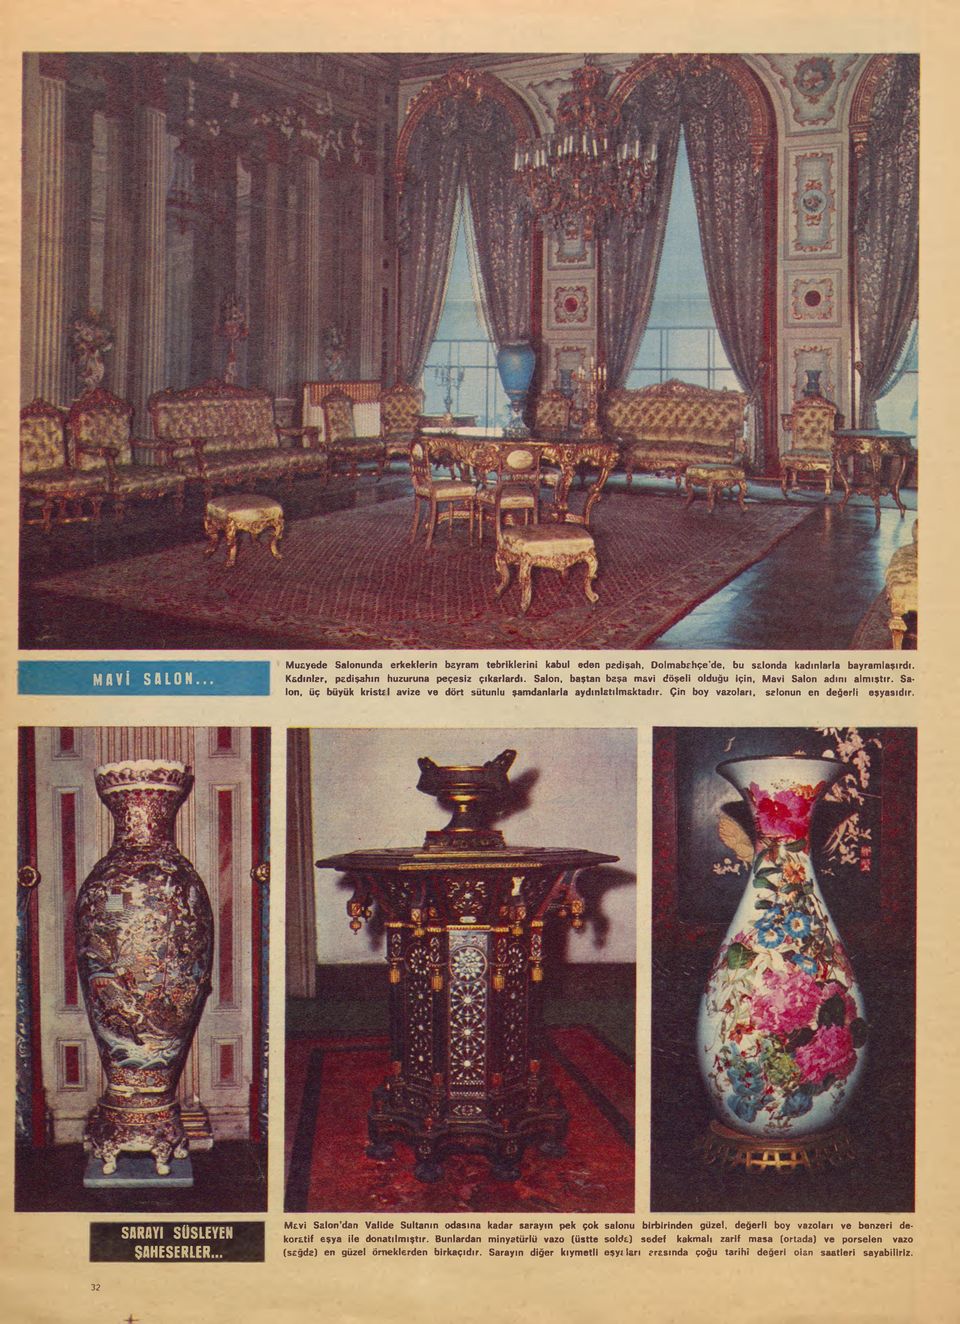 SARAYI SÜSLEYEN ŞAHESERLER... Mavi Salon'dan Valide Sultanın odasına kadar sarayın pek çok salonu birbirinden güzel, değerli boy vazoları ve benzeri dekoratif eşya ile donatılmıştır.